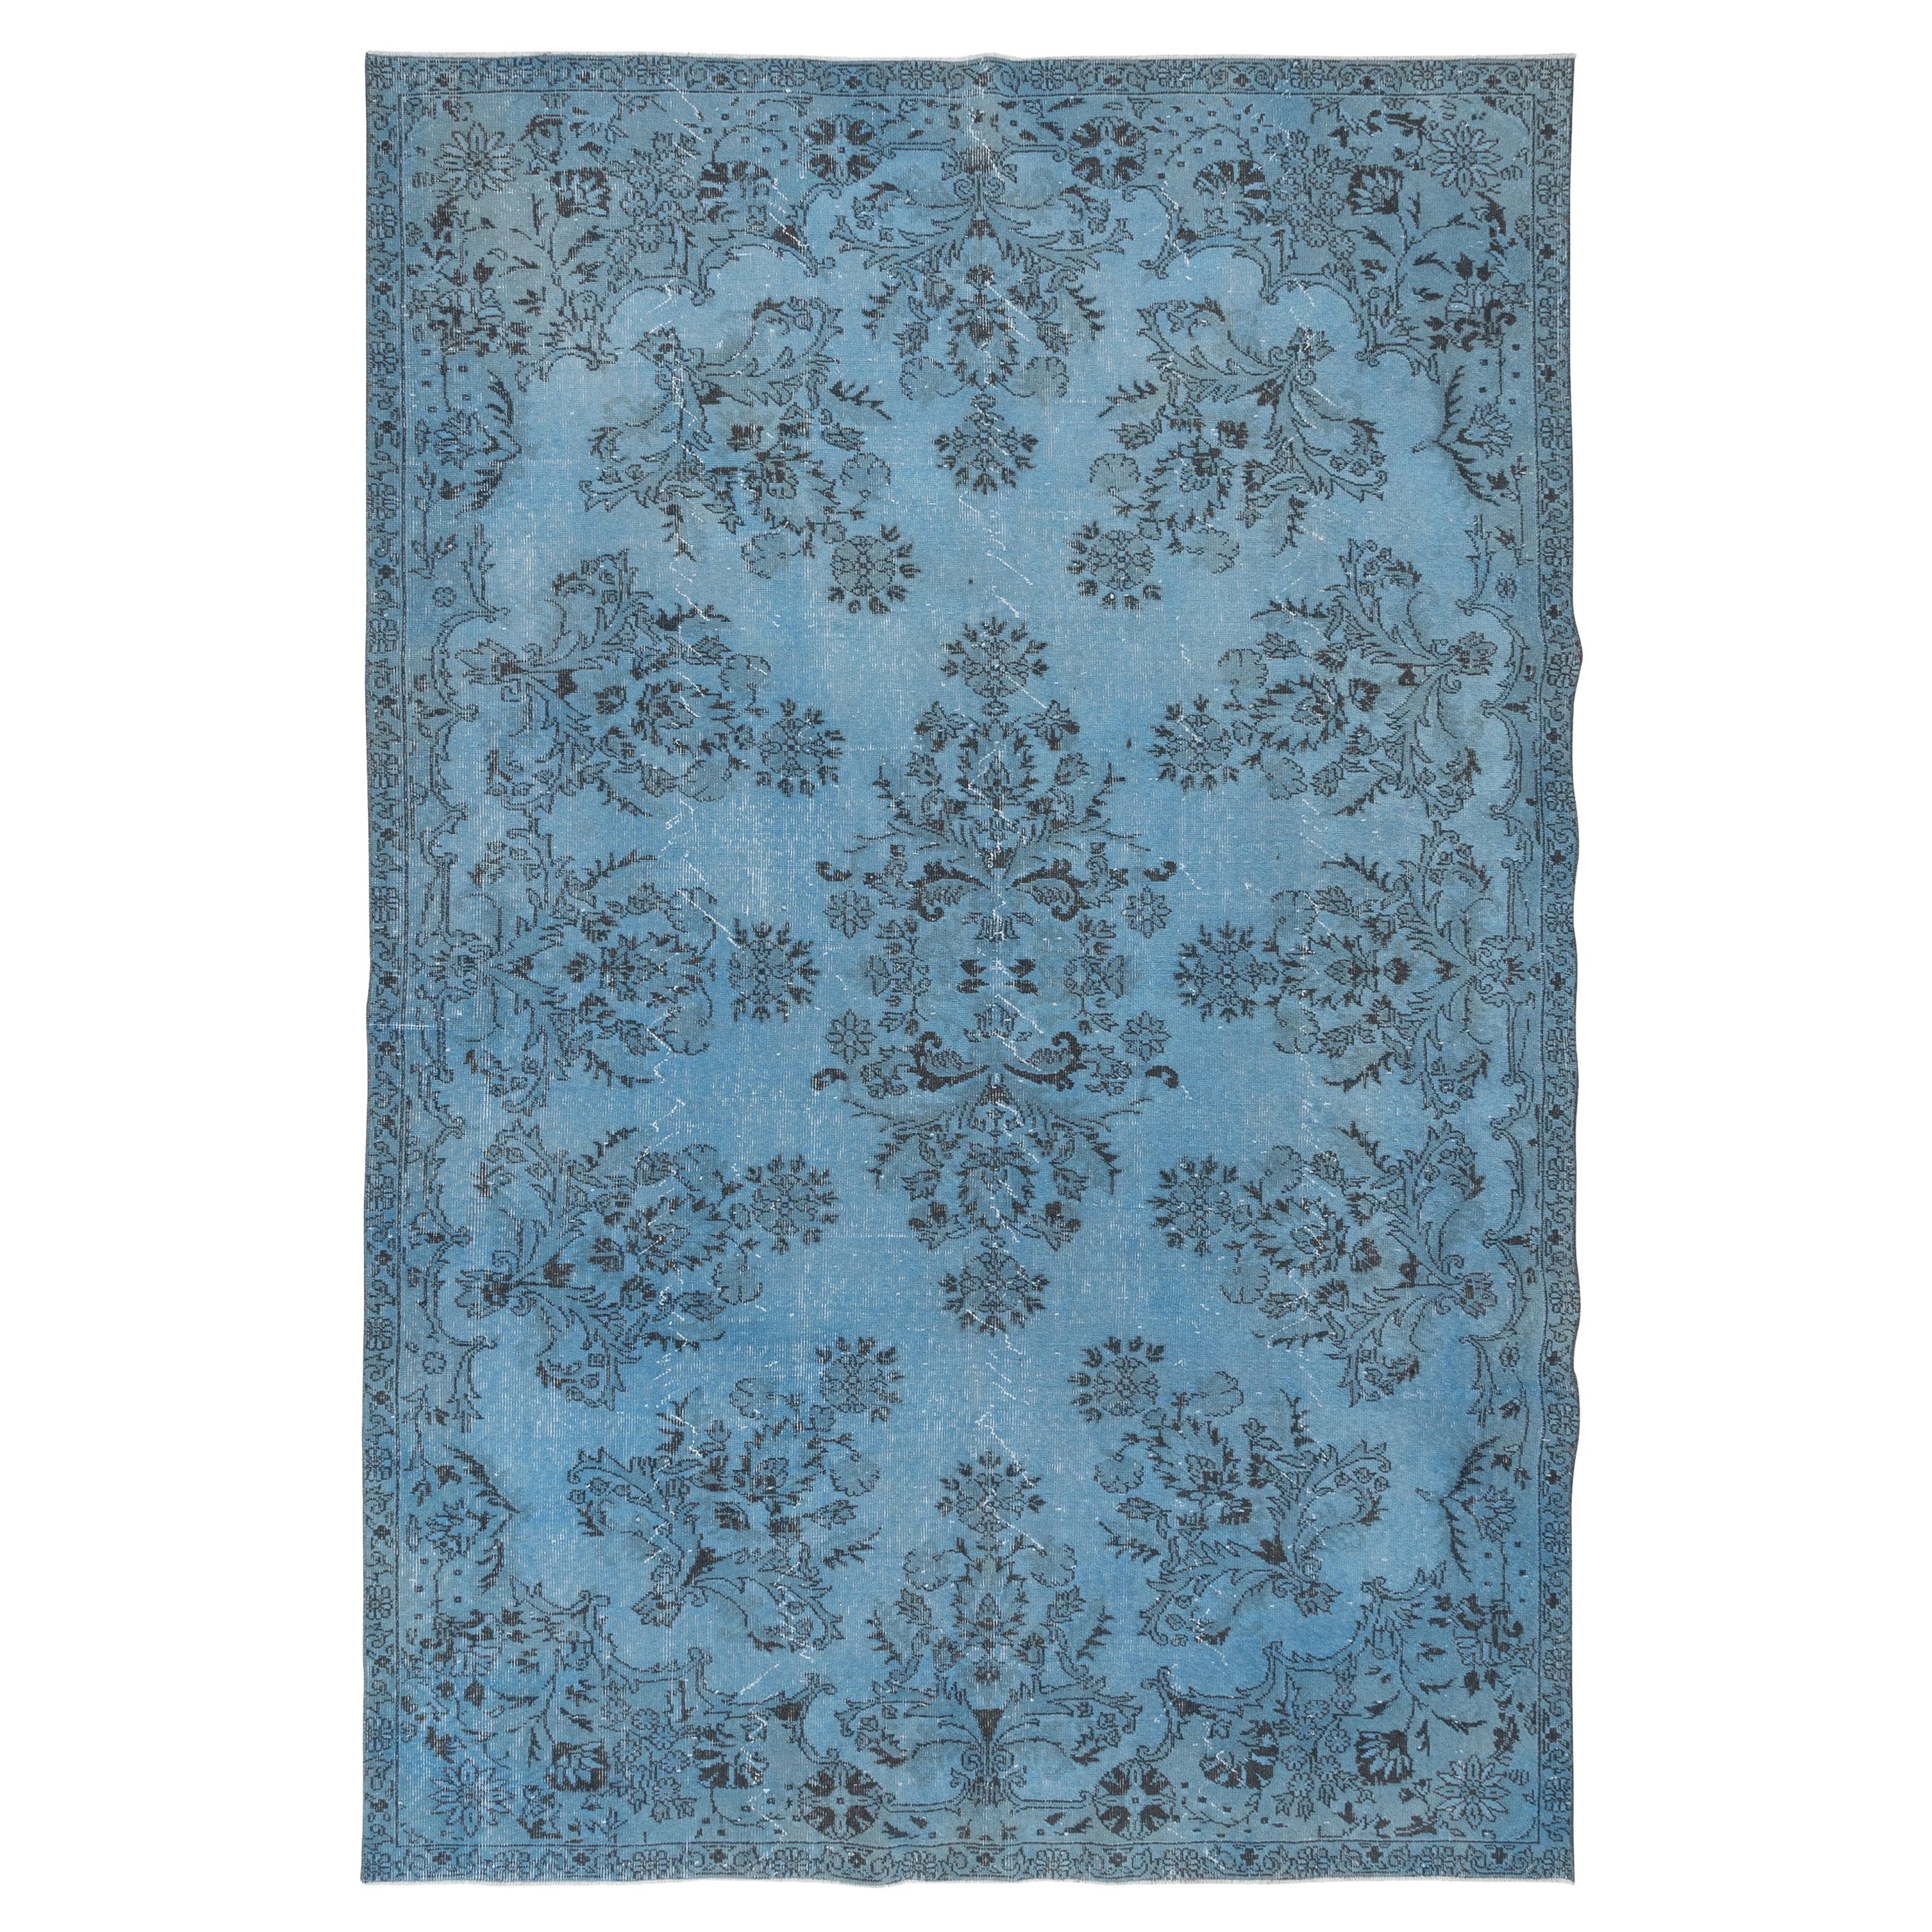 7x10.6 Ft Hellblauer moderner Teppich, handgefertigter Wohnzimmerteppich aus türkischer Wolle, modern